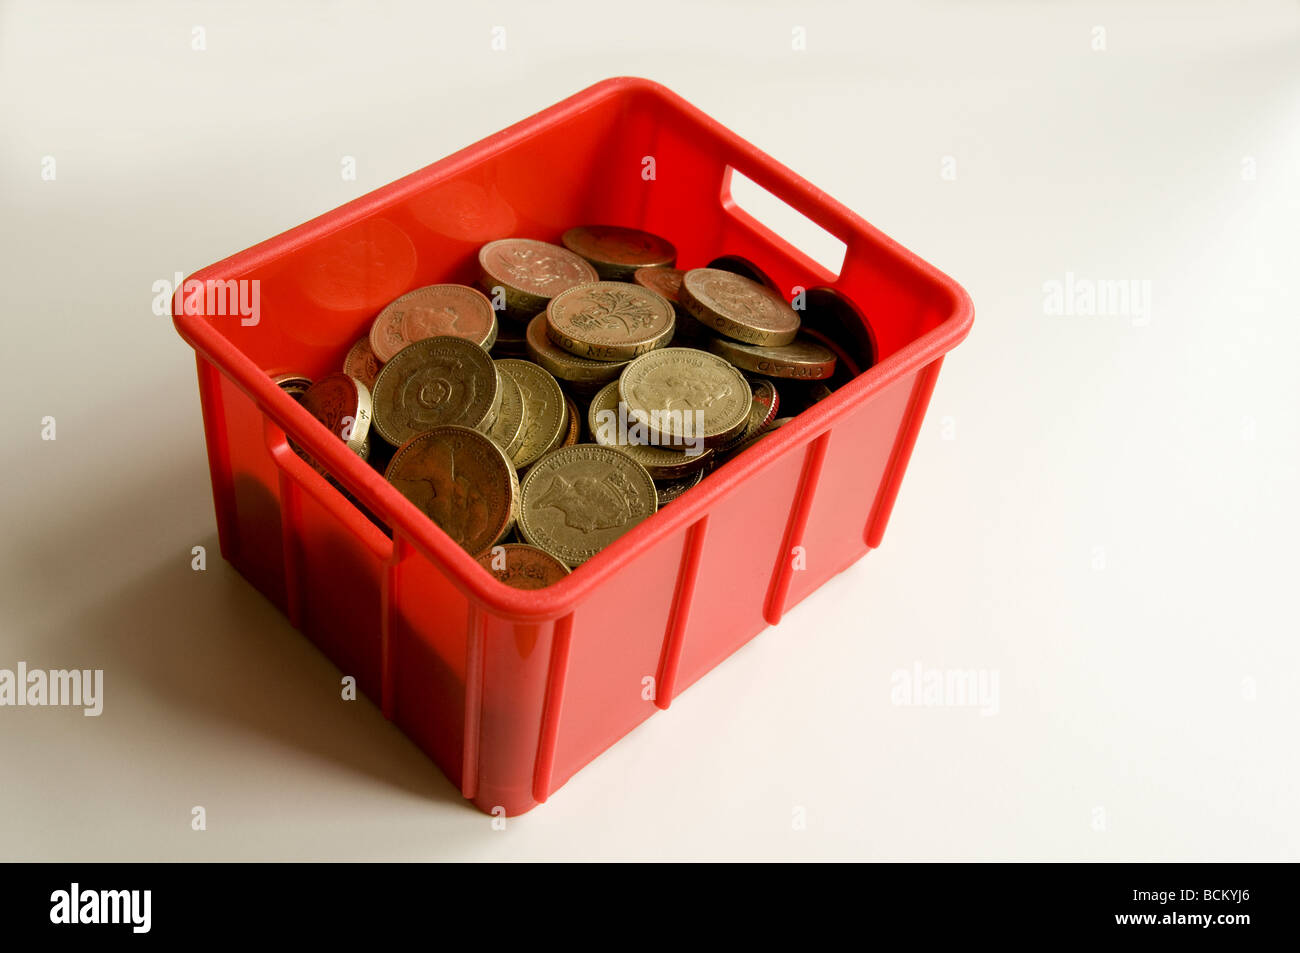 Piccola cassa riempita con monete del Regno Unito - principalmente £1s. In rappresentanza di movimento / spese di trasloco. Foto Stock